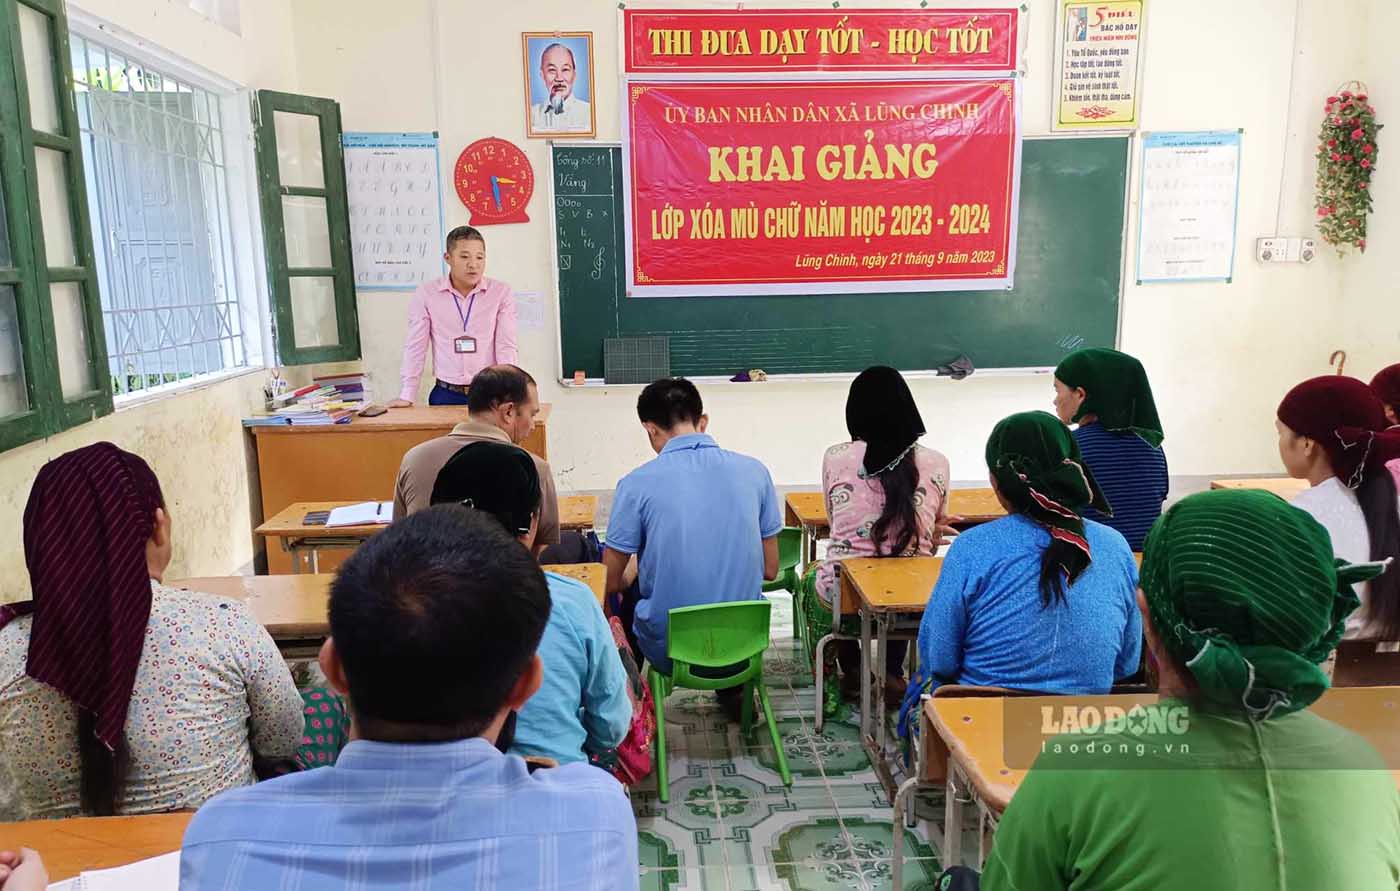 Những lớp học xoá mù chữ cho đồng bào dân tộc liên tục được mở khắp các xã vùng cao của tỉnh Hà Giang. Ảnh: Minh Chuyên.